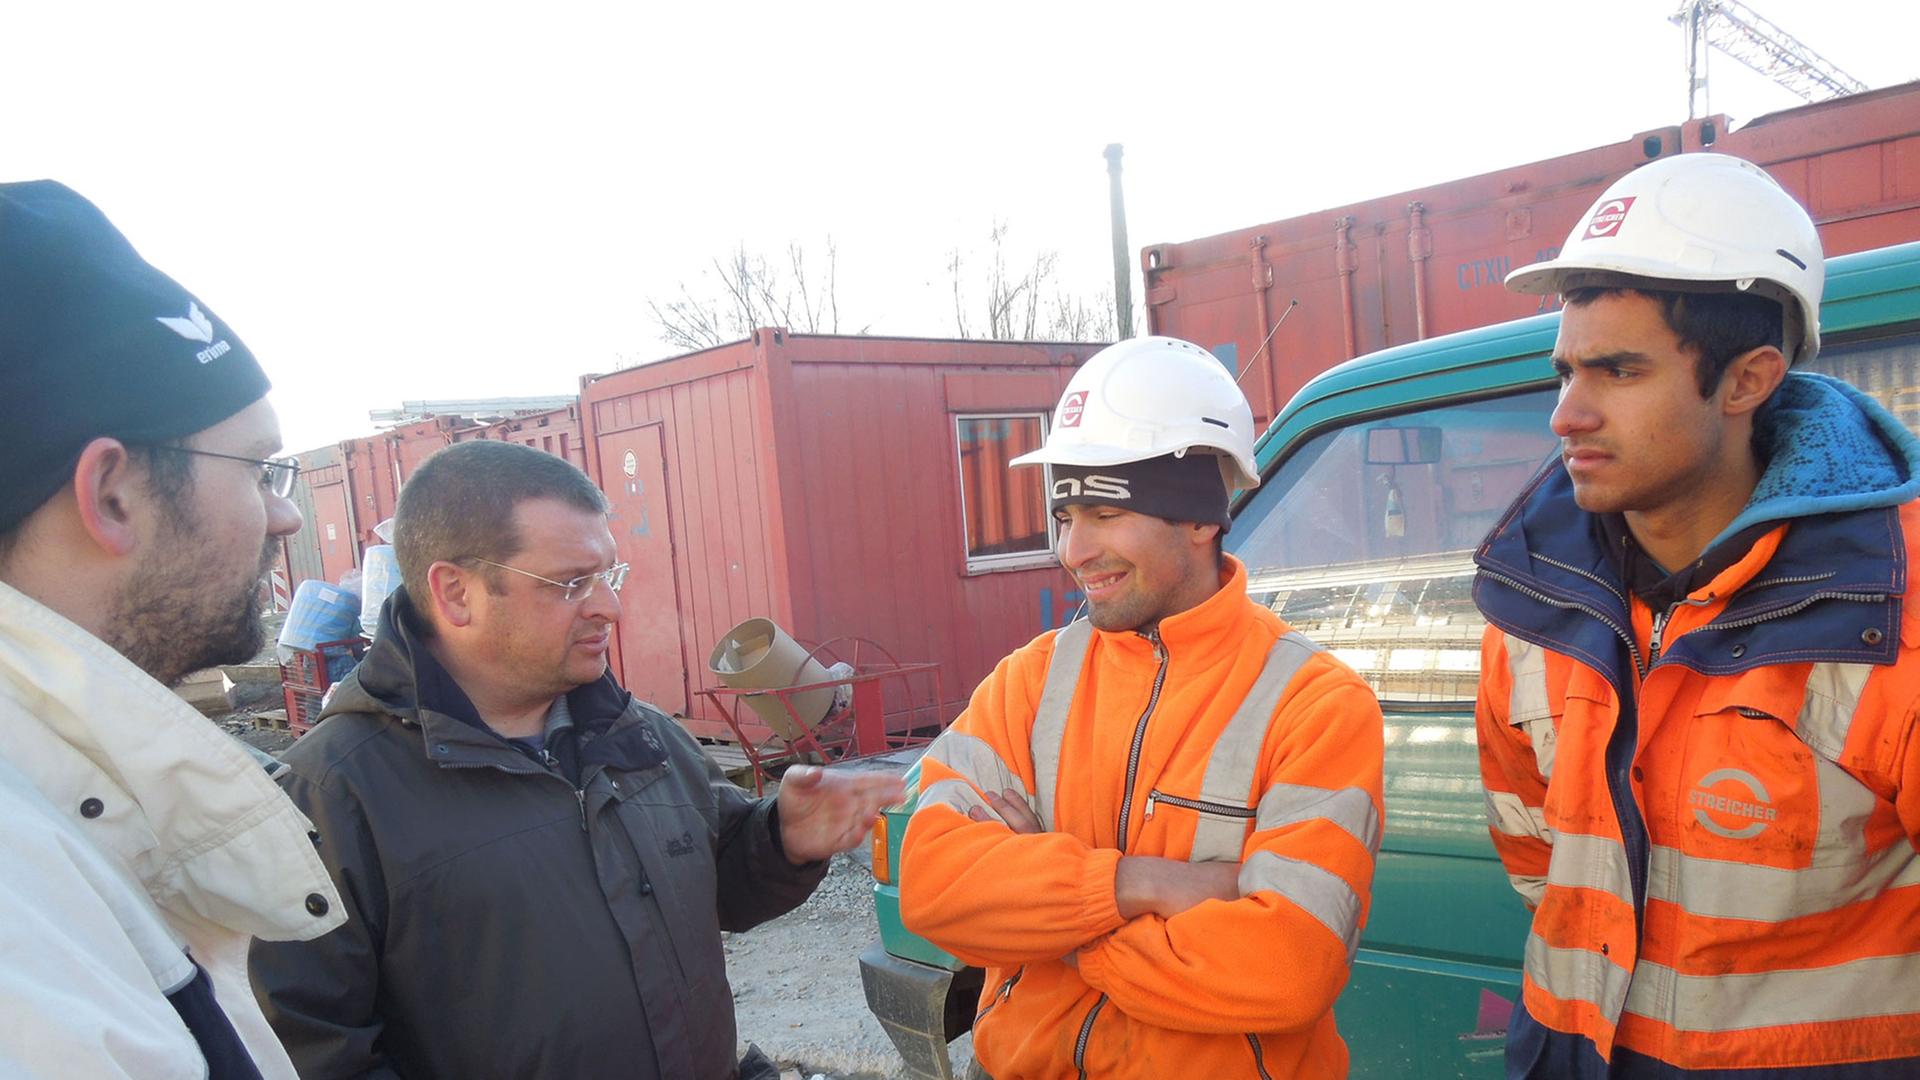 Bayerisch-bulgarische Baubesprechung. Vier Auszubildende aus Burgas lernen bei der Baufirma (Streicher) in Niederbayern